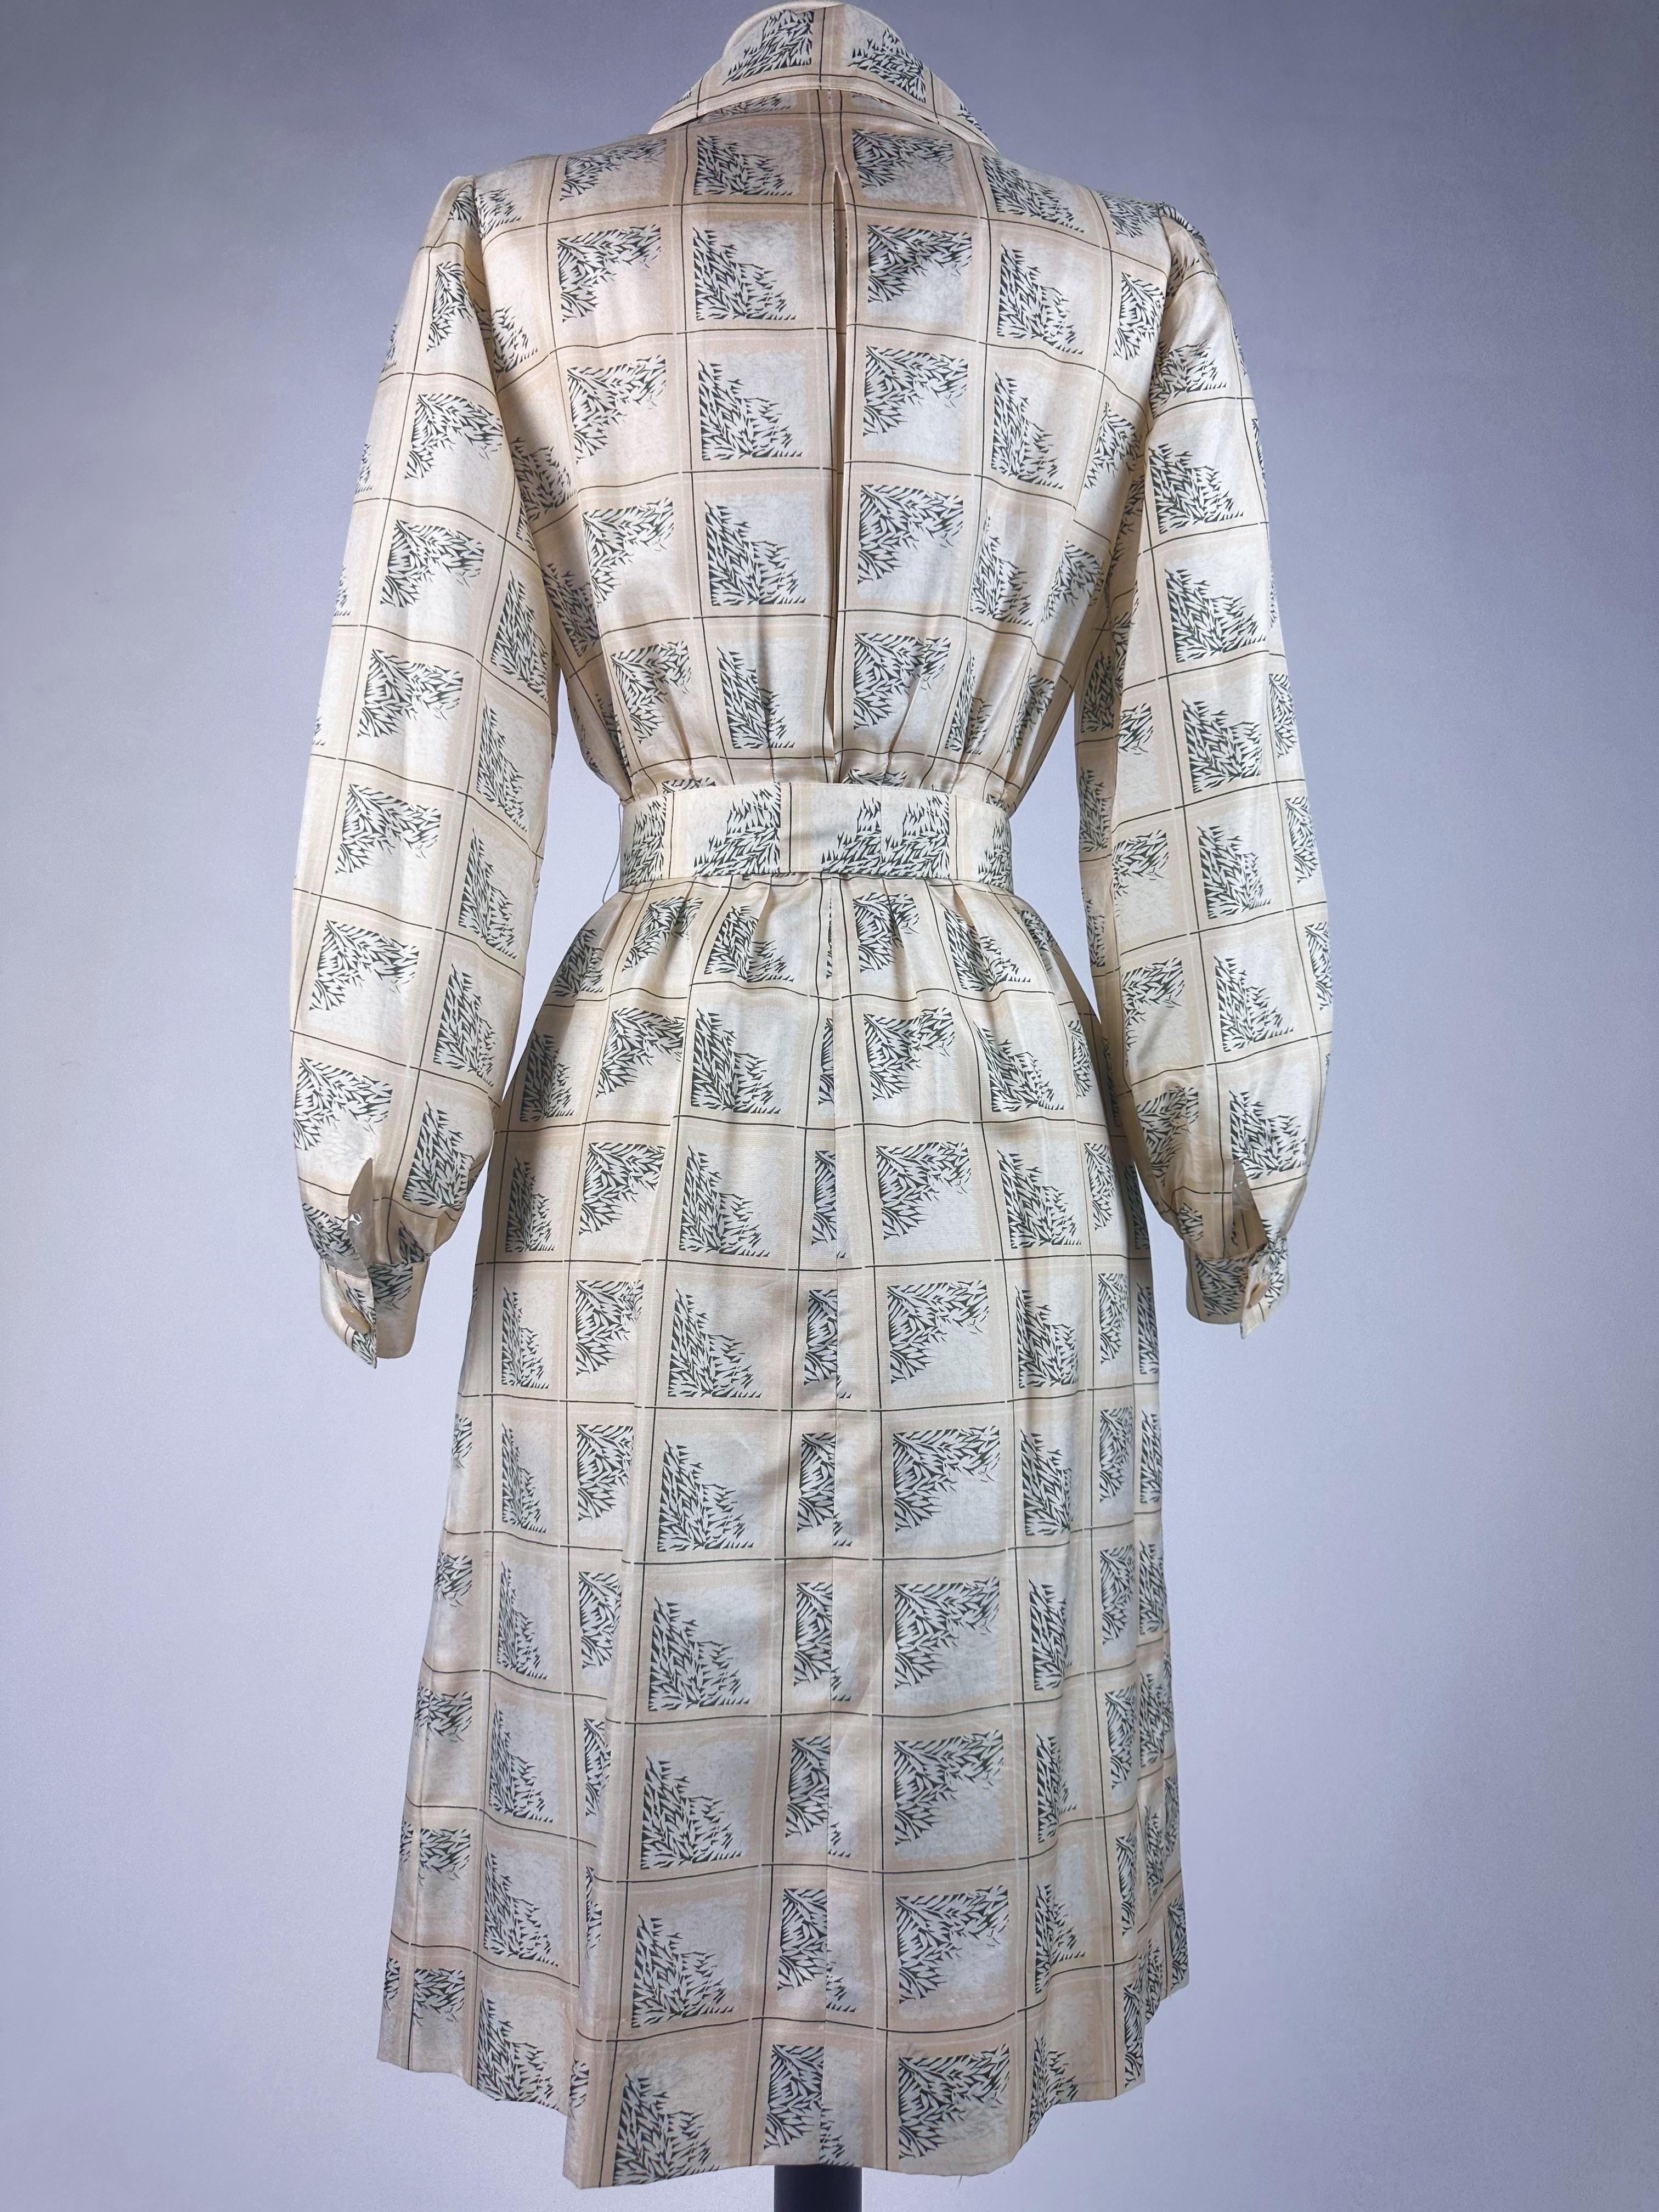 Blouse dress in printed taffeta by Gérard Pipart for Nina Ricci Circa 1985 4